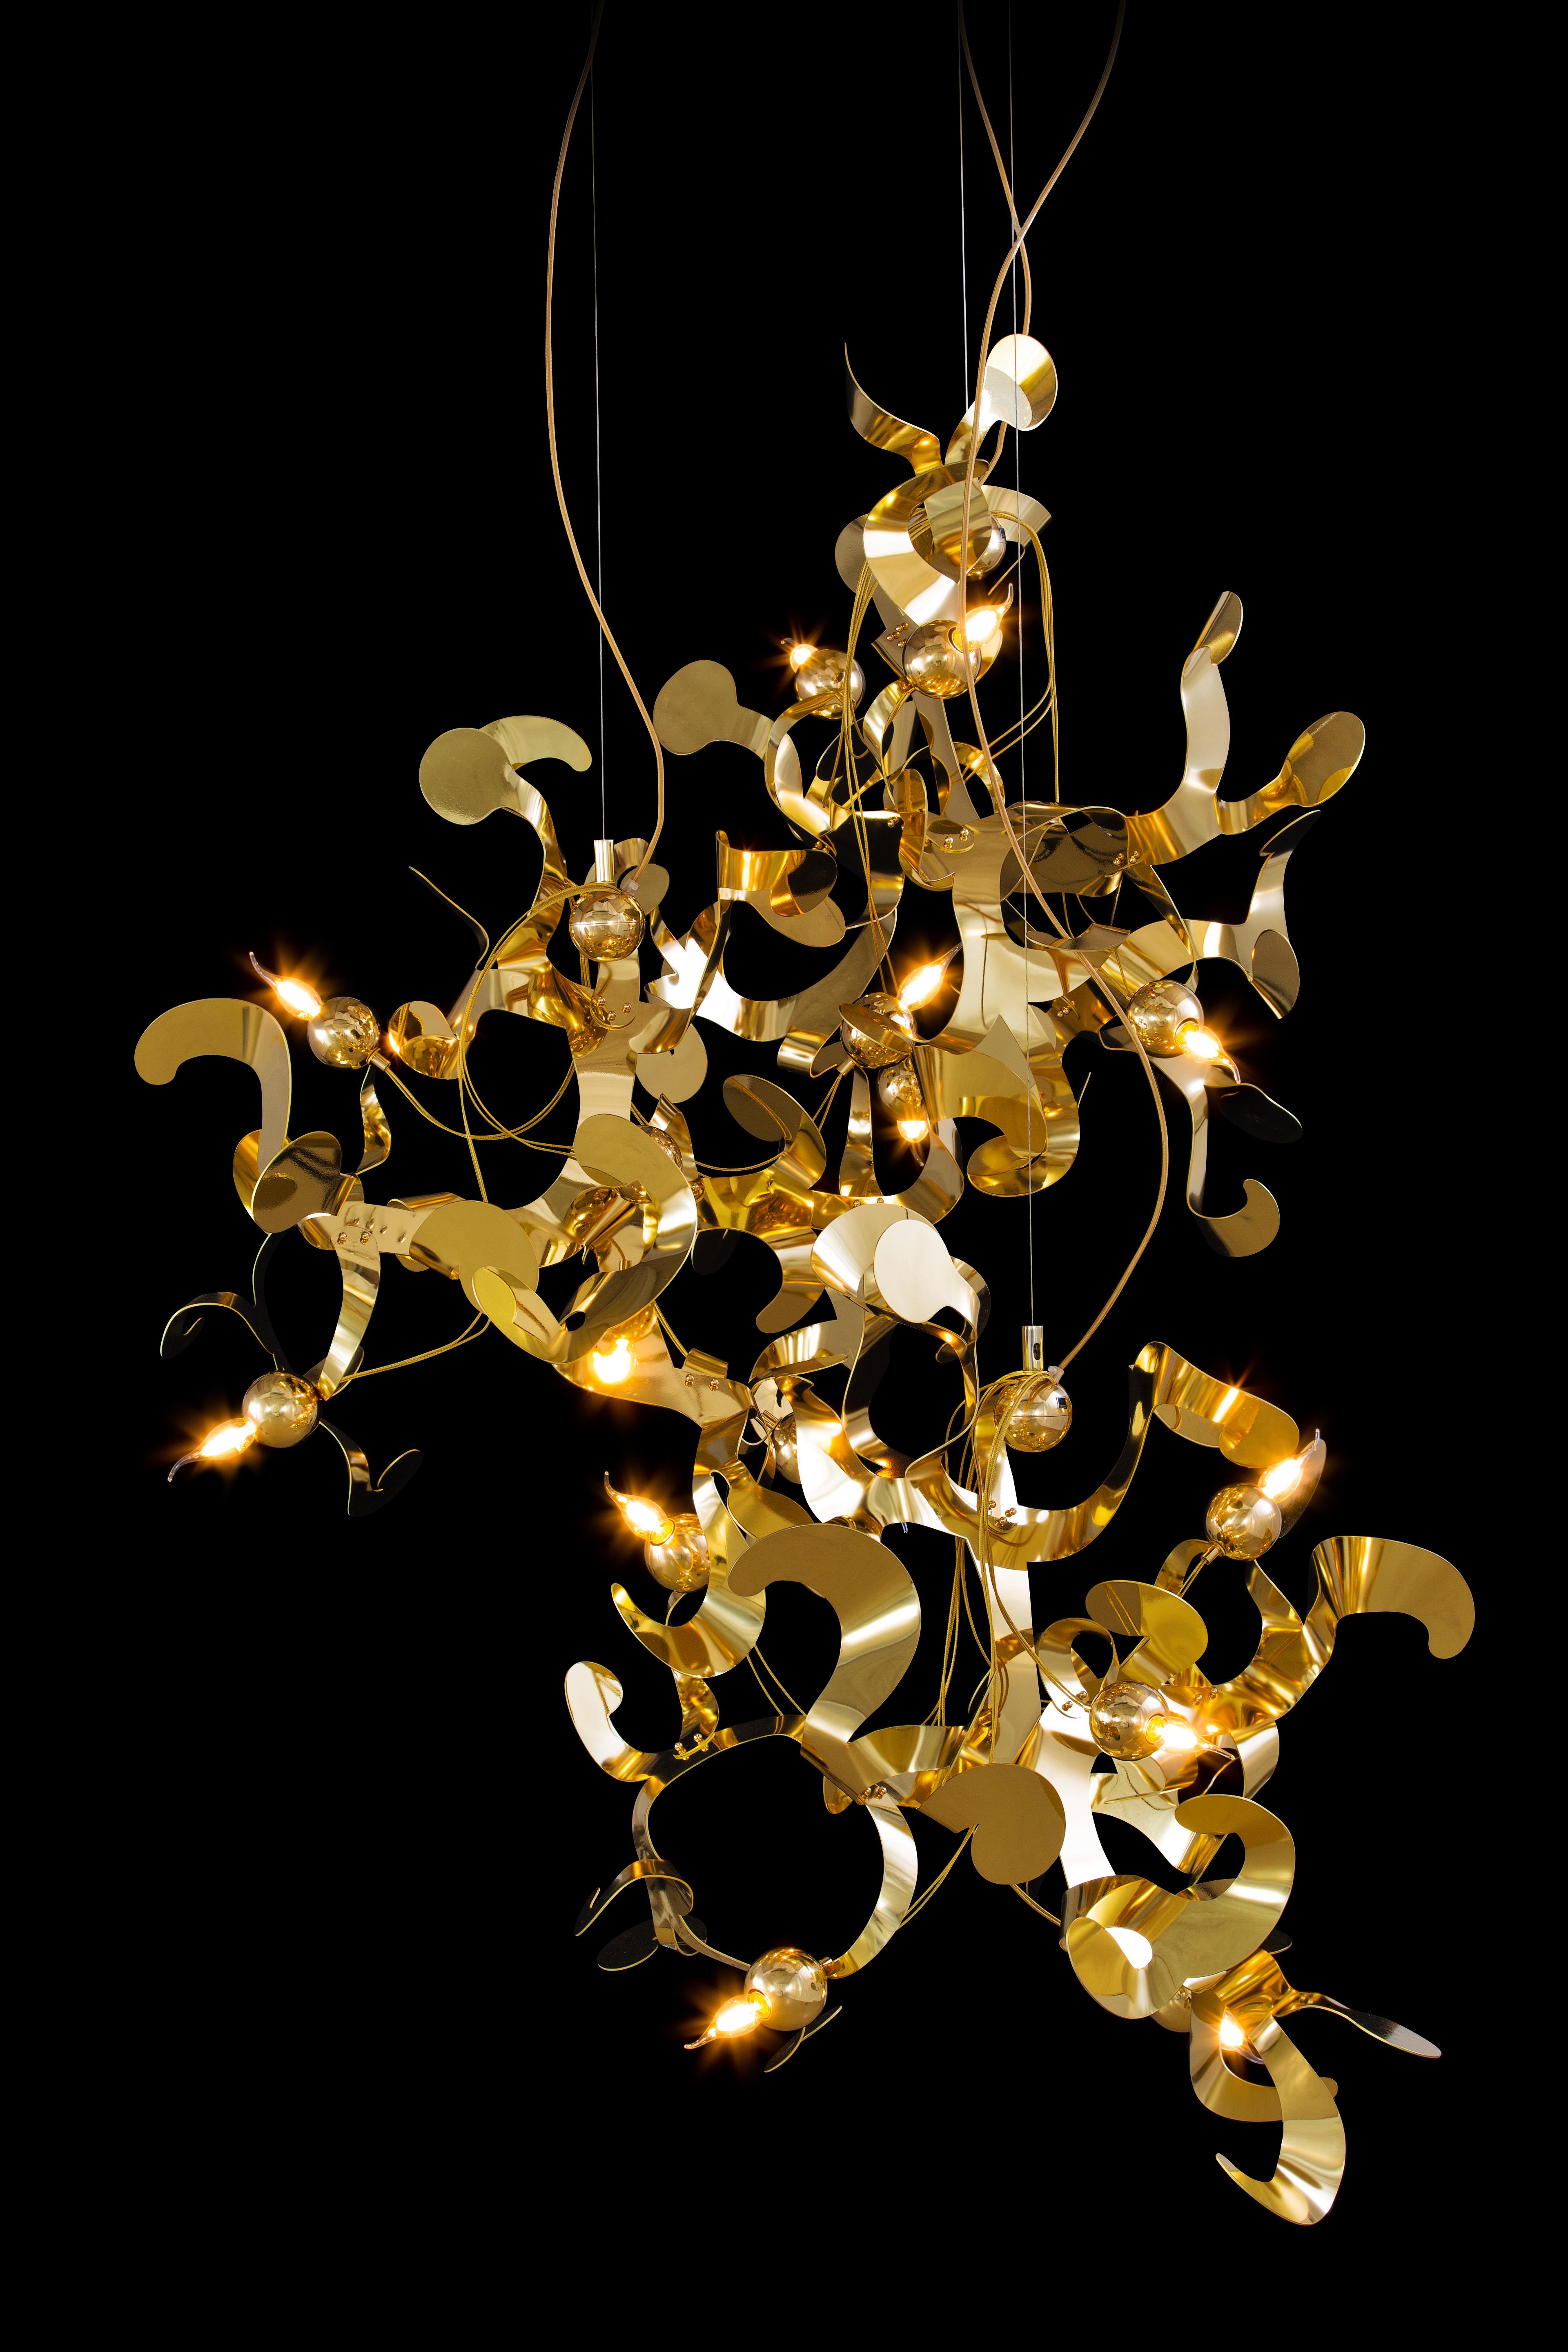 La suspension moderne Kelp en finition laiton, conçue par William Brand, est une sculpture lumineuse organique libre et ludique de la collection de Brand van Egmond. L'aspect apparemment aléatoire de la sculpture lumineuse, mais les ornements